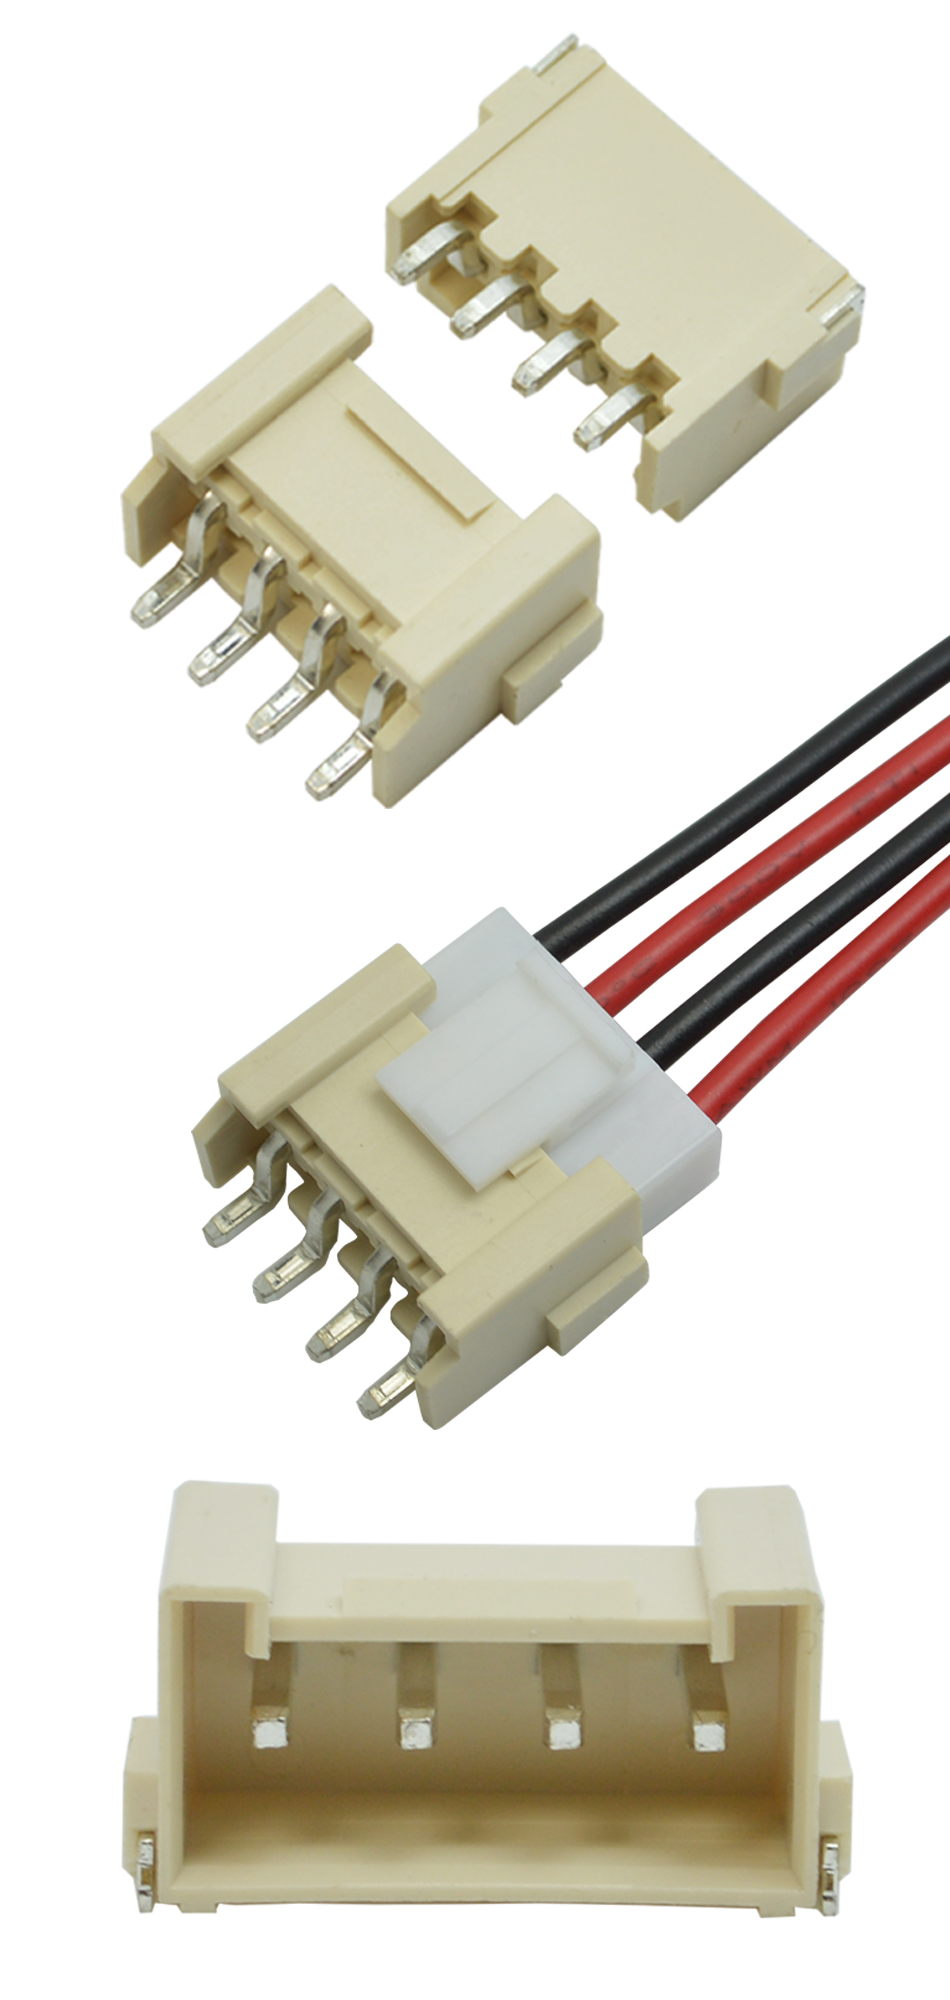 VH3.96-2P卧贴针座PCB板SMT插座 连接器3.96mm 表面贴片座,宏利